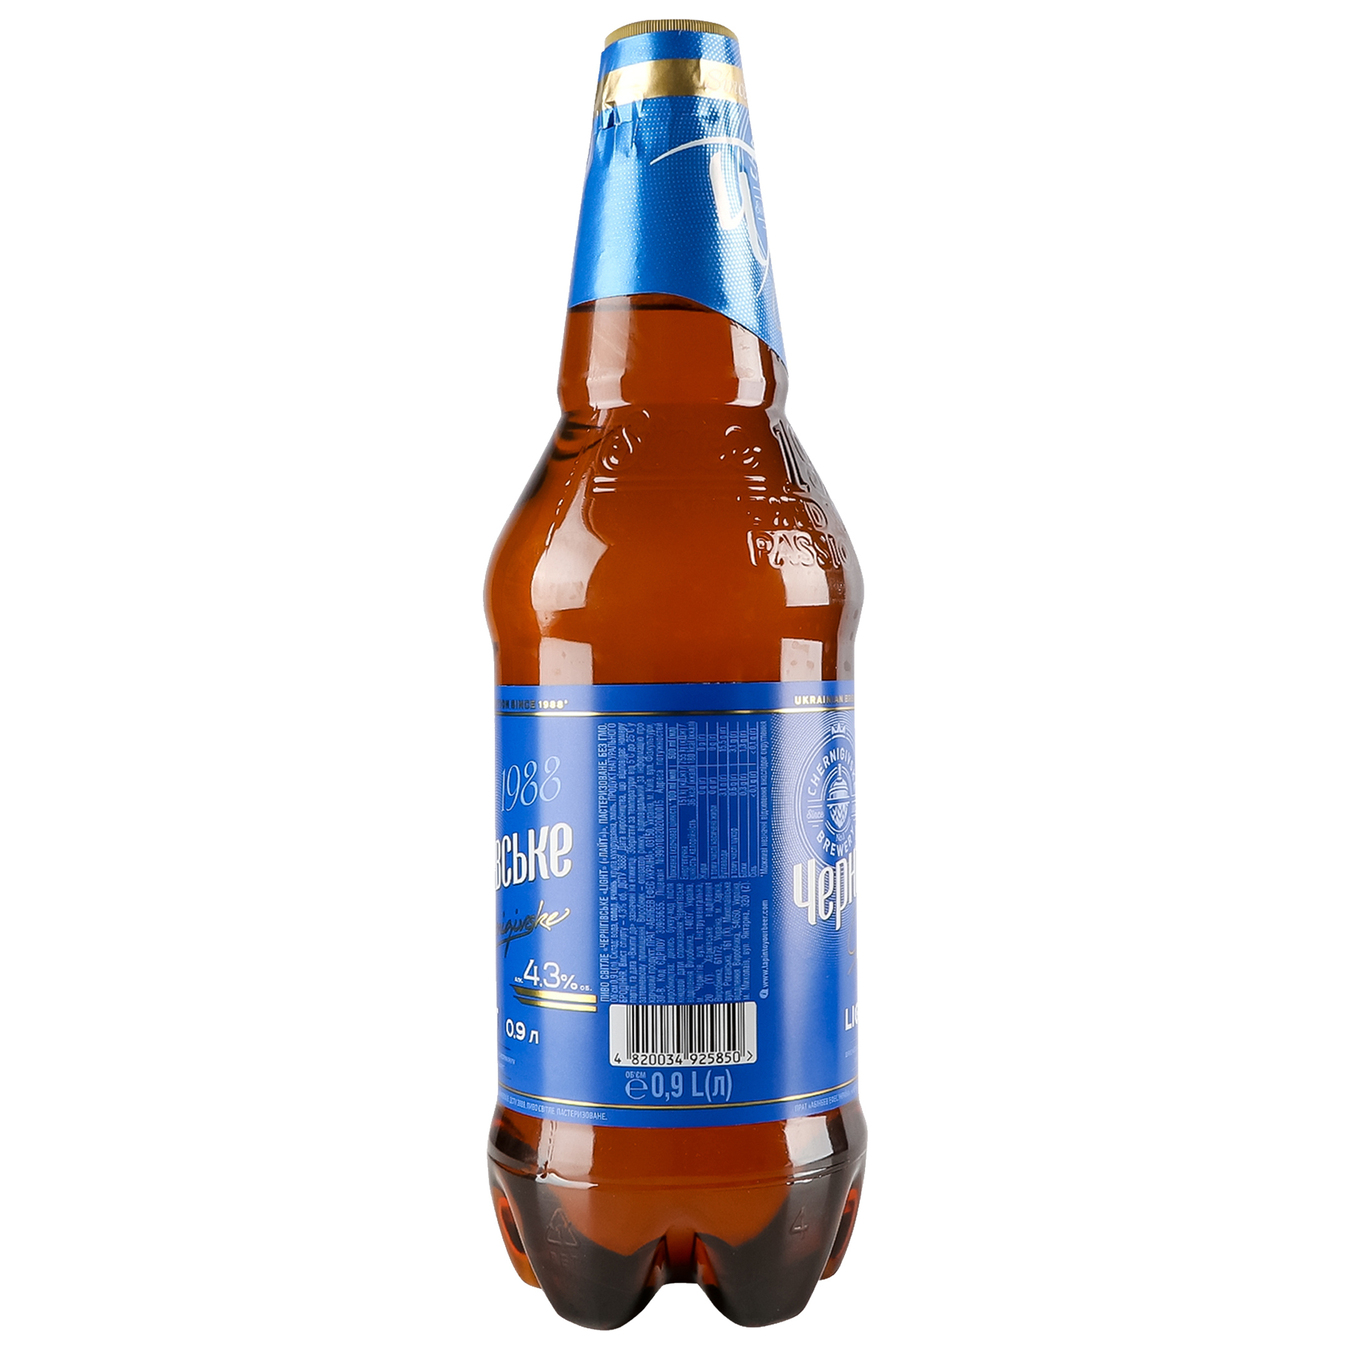 Пиво Черниговское Light 5% 0,9л 4